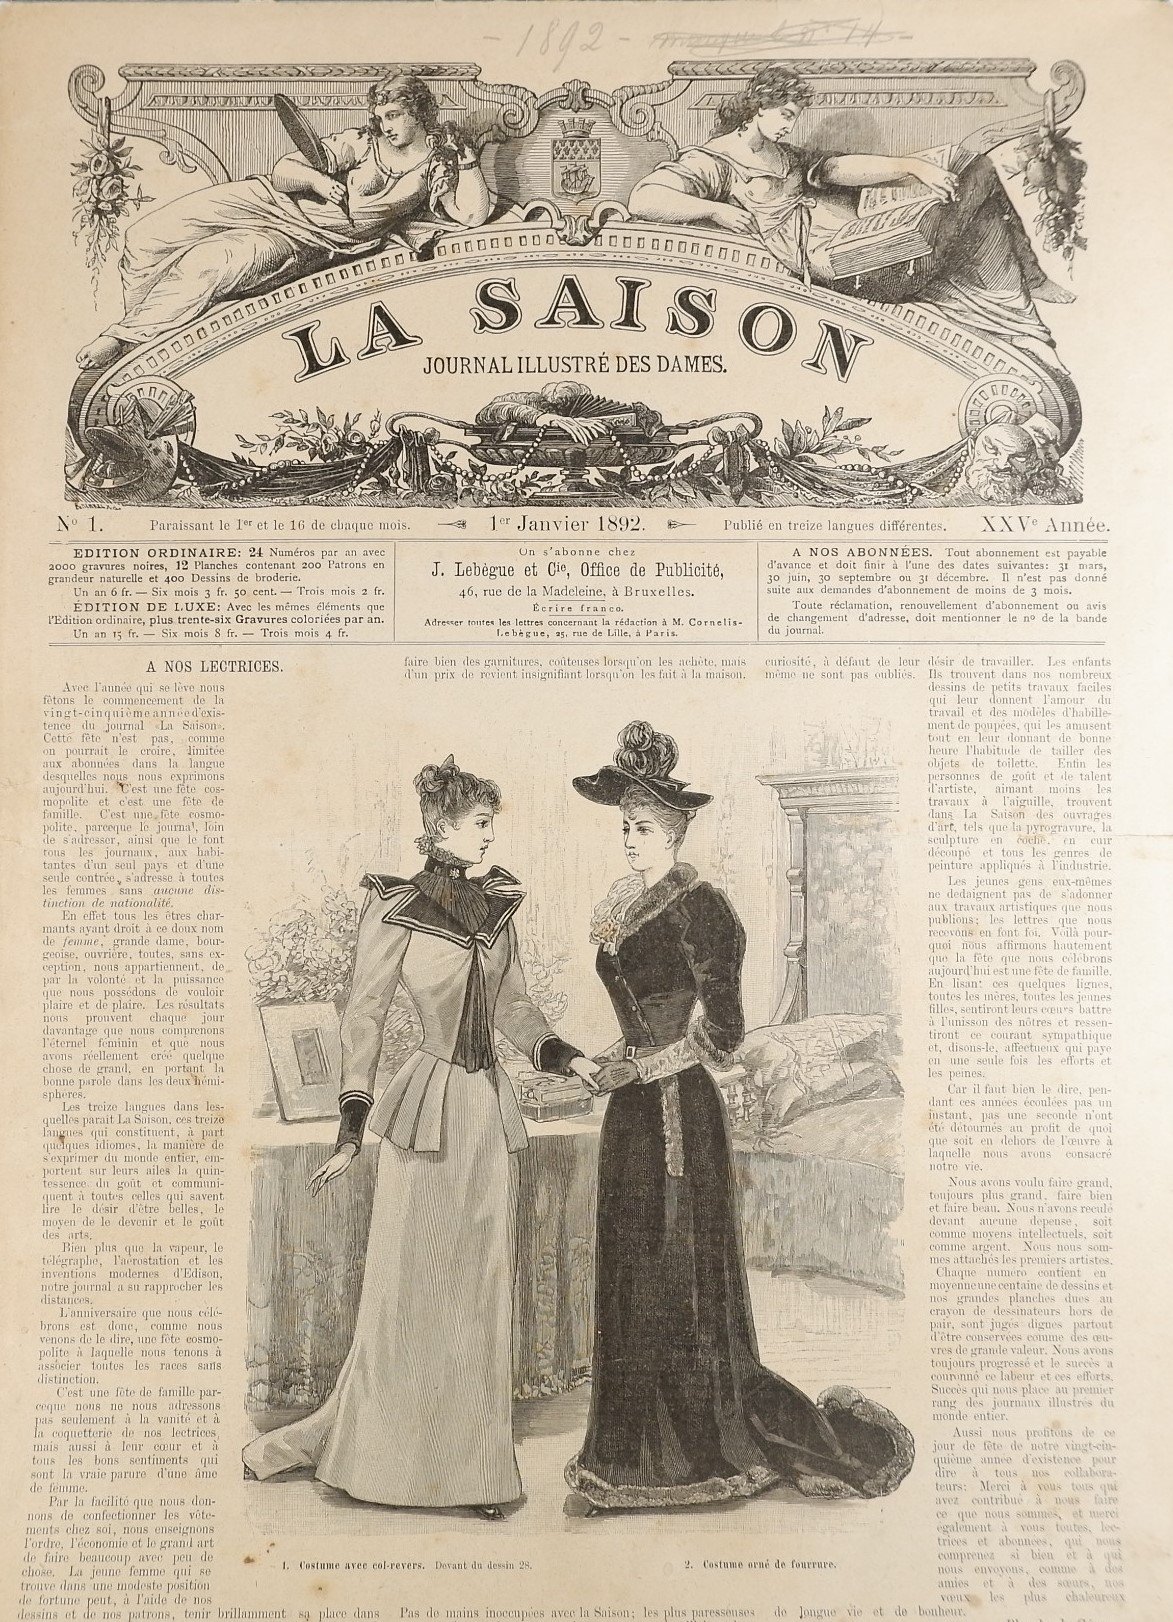 Sammlung: La Saison, Journal illustre`des dames (1892) (Volkskunde- und Freilichtmuseum Roscheider Hof RR-F)